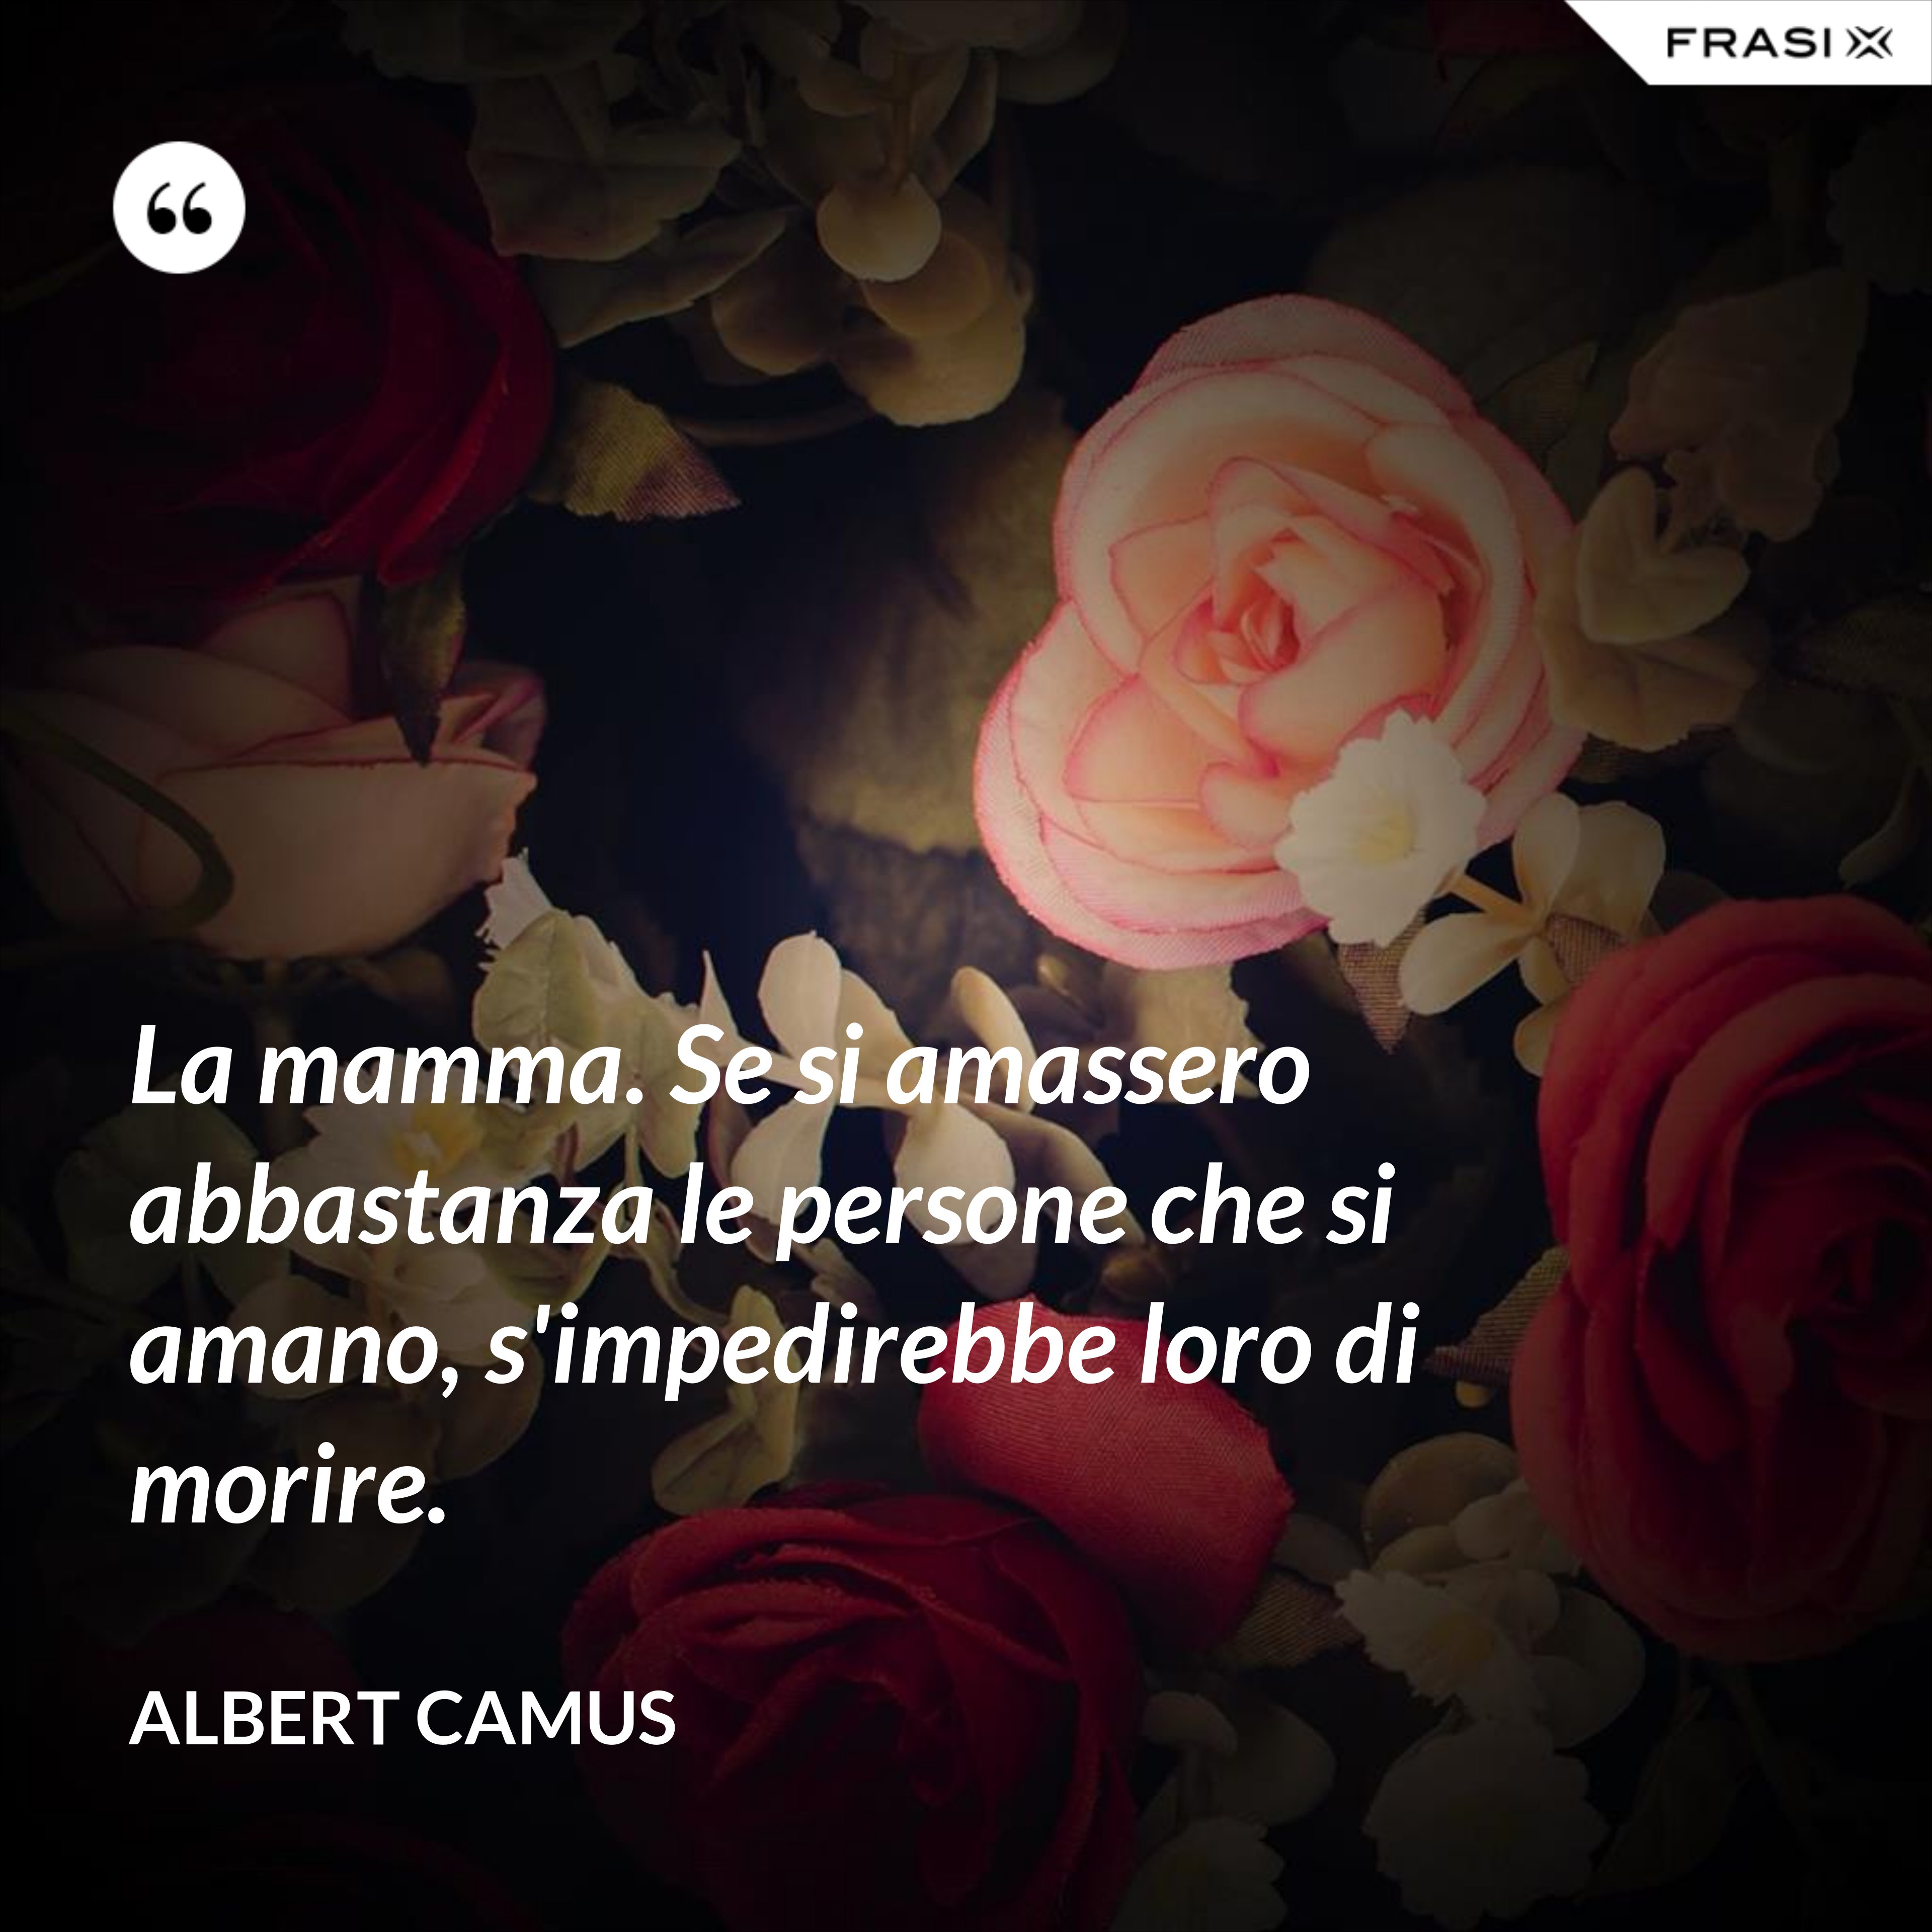 La mamma. Se si amassero abbastanza le persone che si amano, s'impedirebbe loro di morire. - Albert Camus